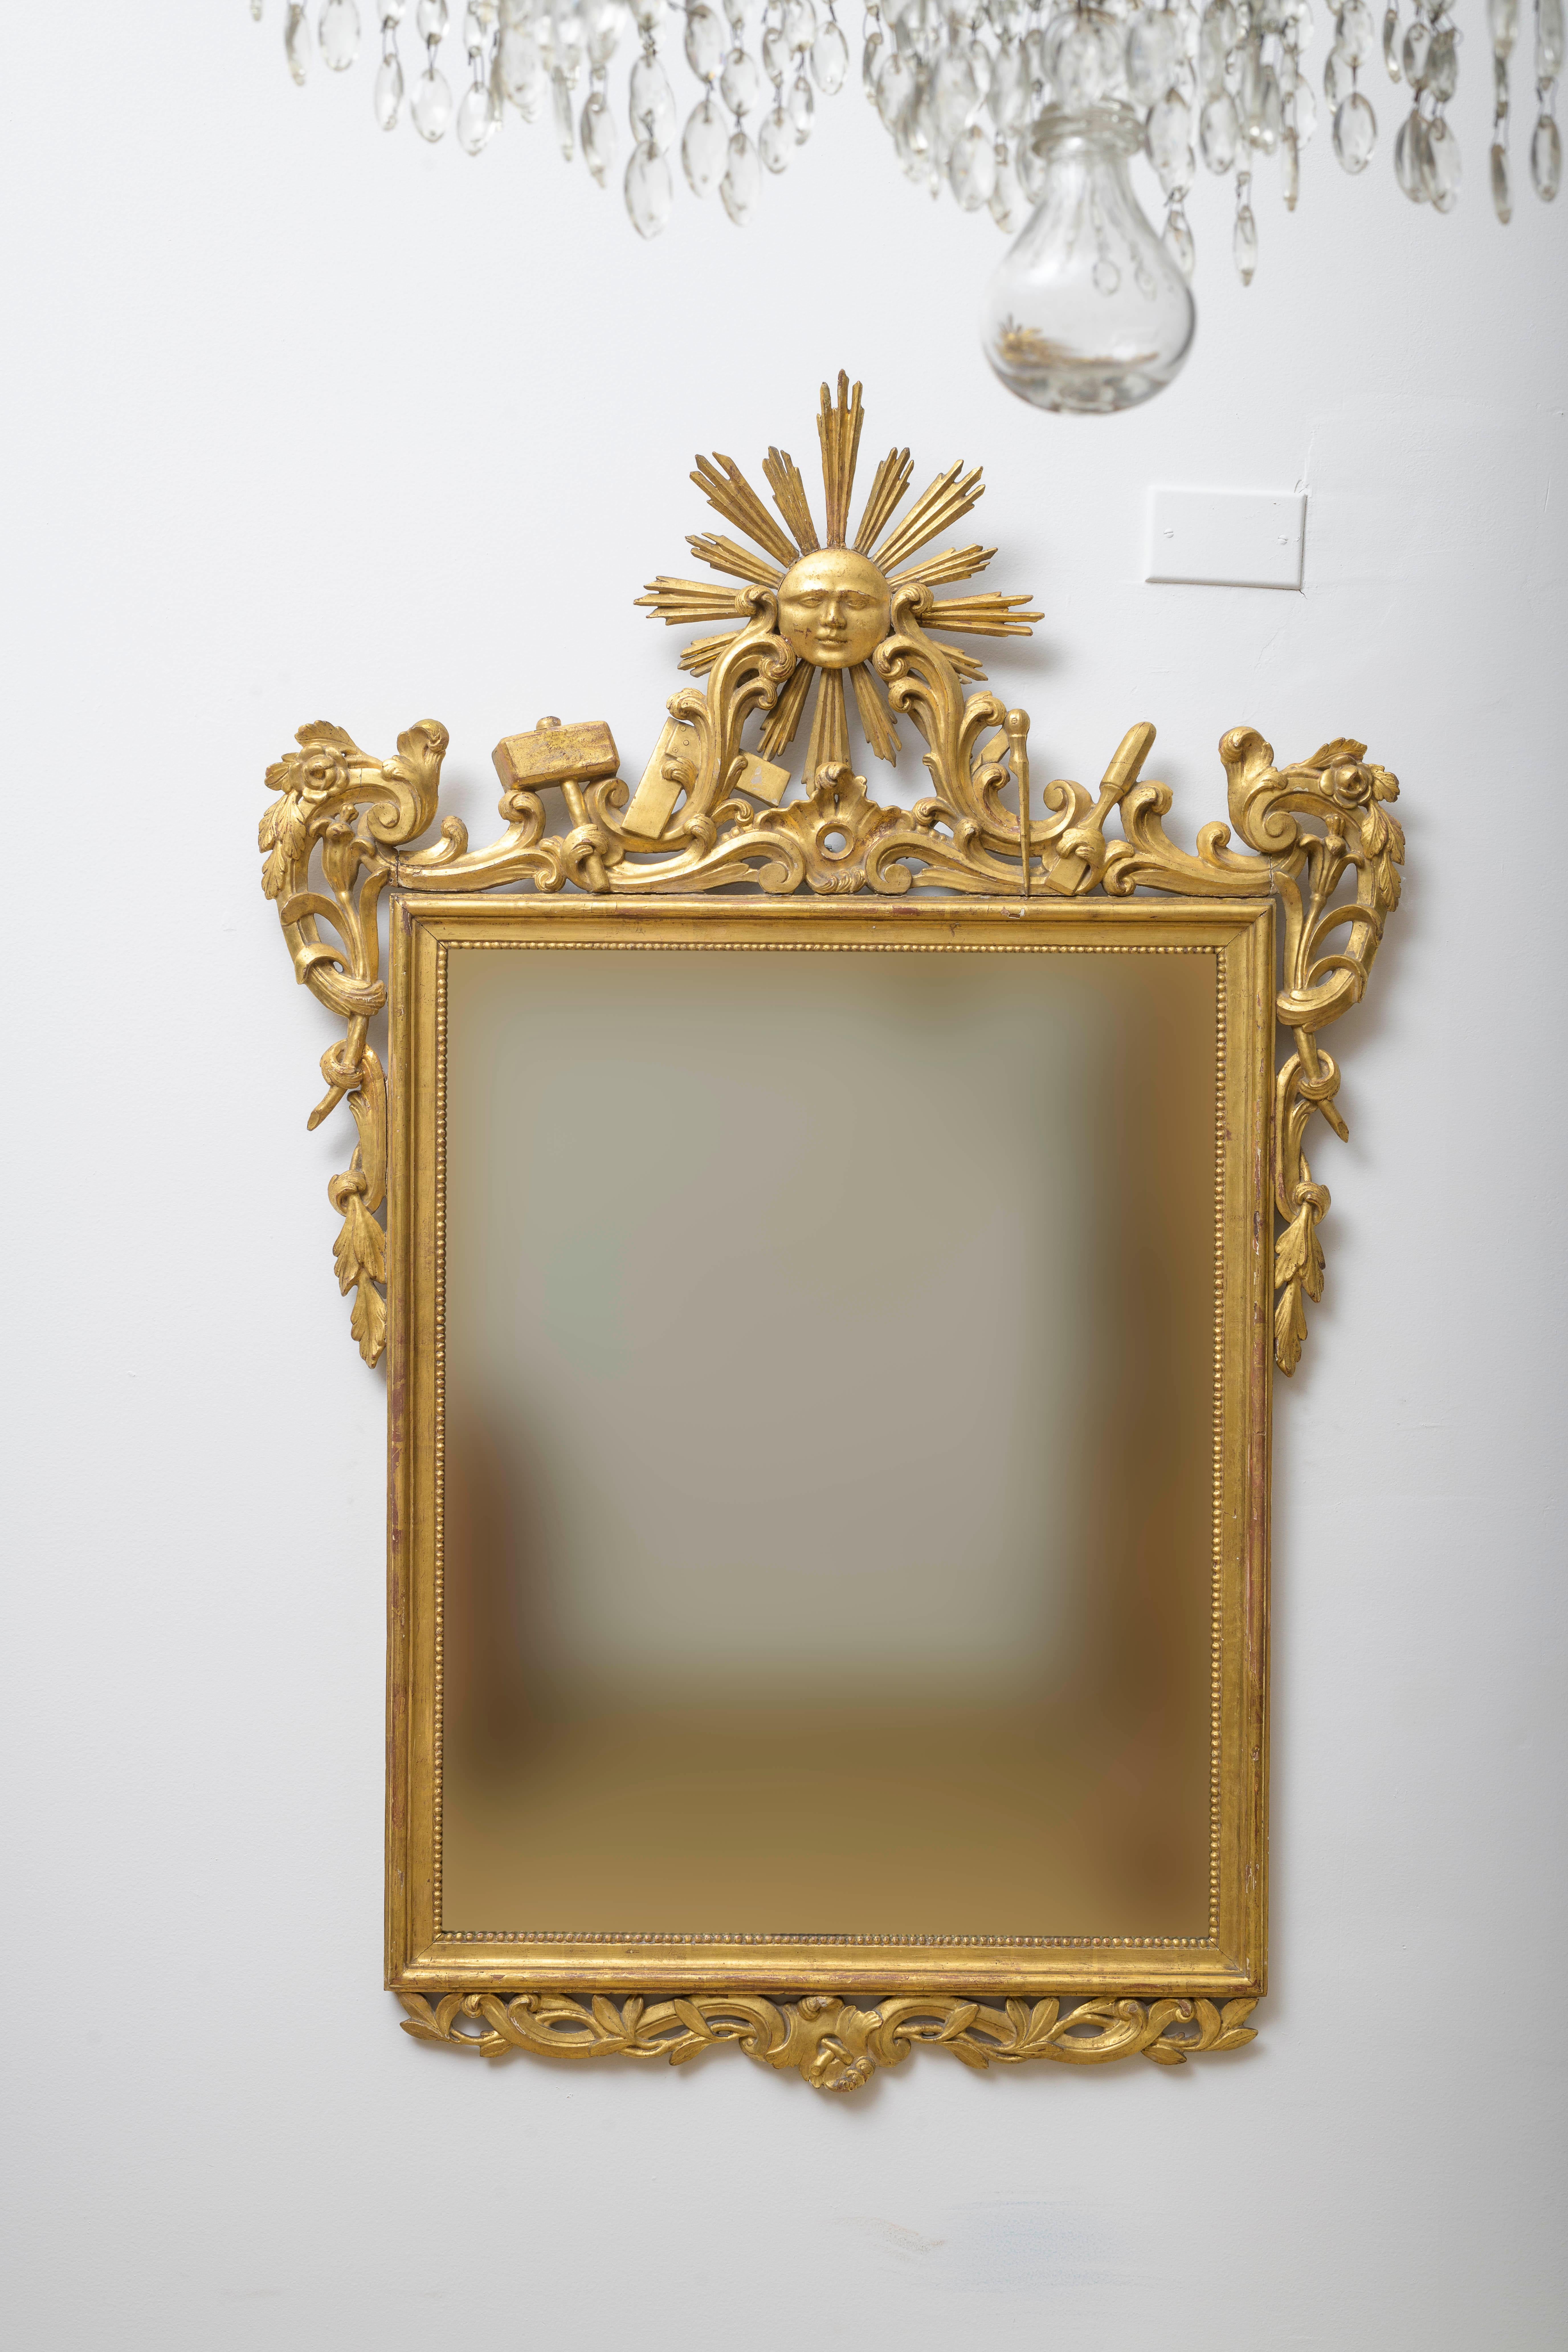 Mitte 18. Jh. Spiegel mit Freimaurersymbolen, Louis XV, durchbrochenes Holz, fein geschnitzt mit Maurerwerkzeugen und mit zentraler Sonnengott-Kartusche, Freimaurersymbolen, Blättern und Zierfries, vergoldet. Spiegelglas, nicht original, aber aus